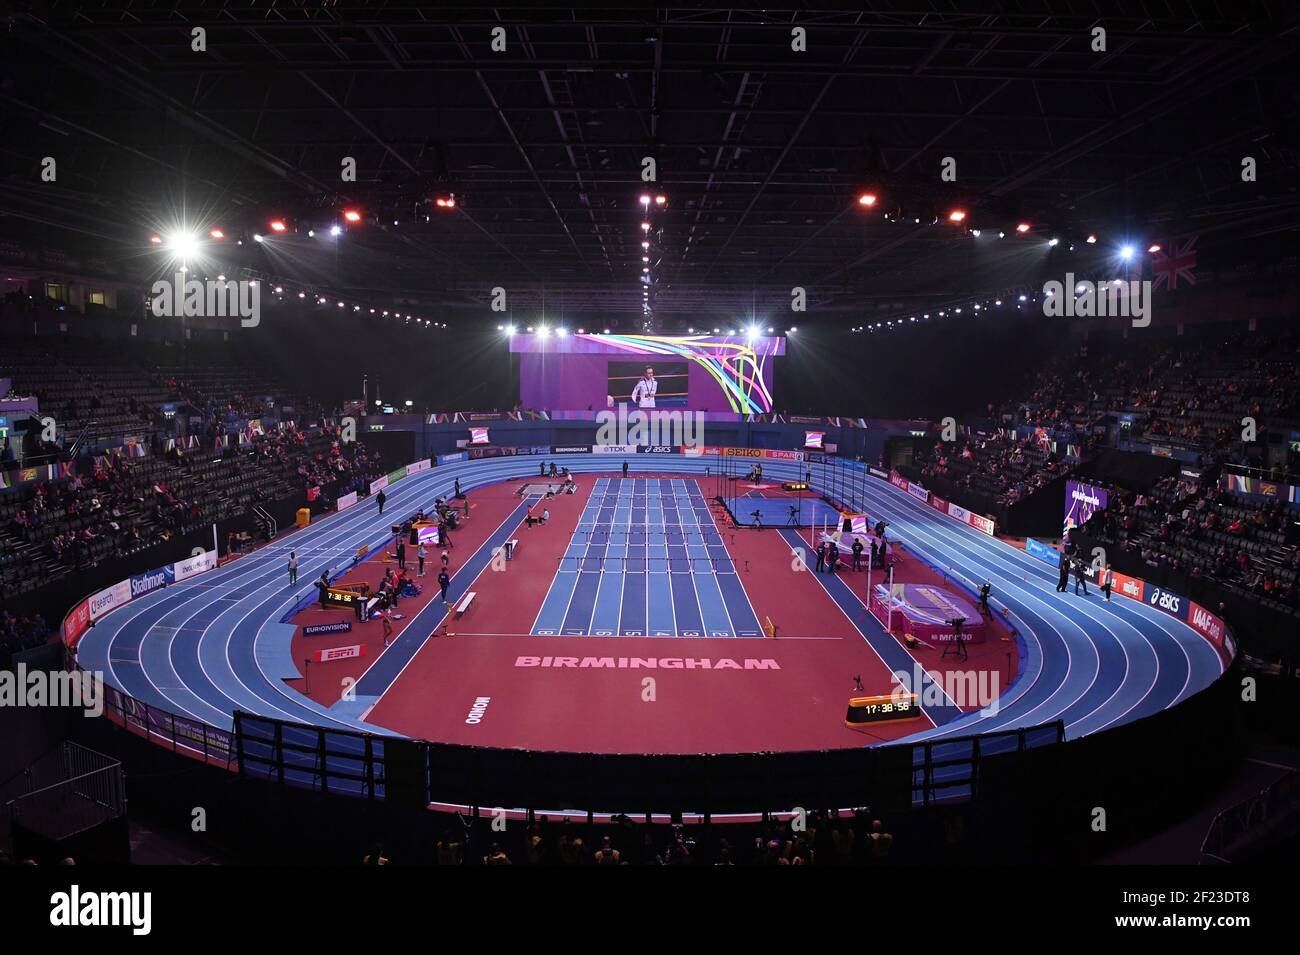 Vue générale de Birmingham Artena lors des Championnats du monde d'intérieur Athlétisme 2018 de l'IAAF, à Birmingham, Grande-Bretagne, 2e jour le 2 mars 2018 - photo Stephane Kempinaire / KMSP / DPPI Banque D'Images